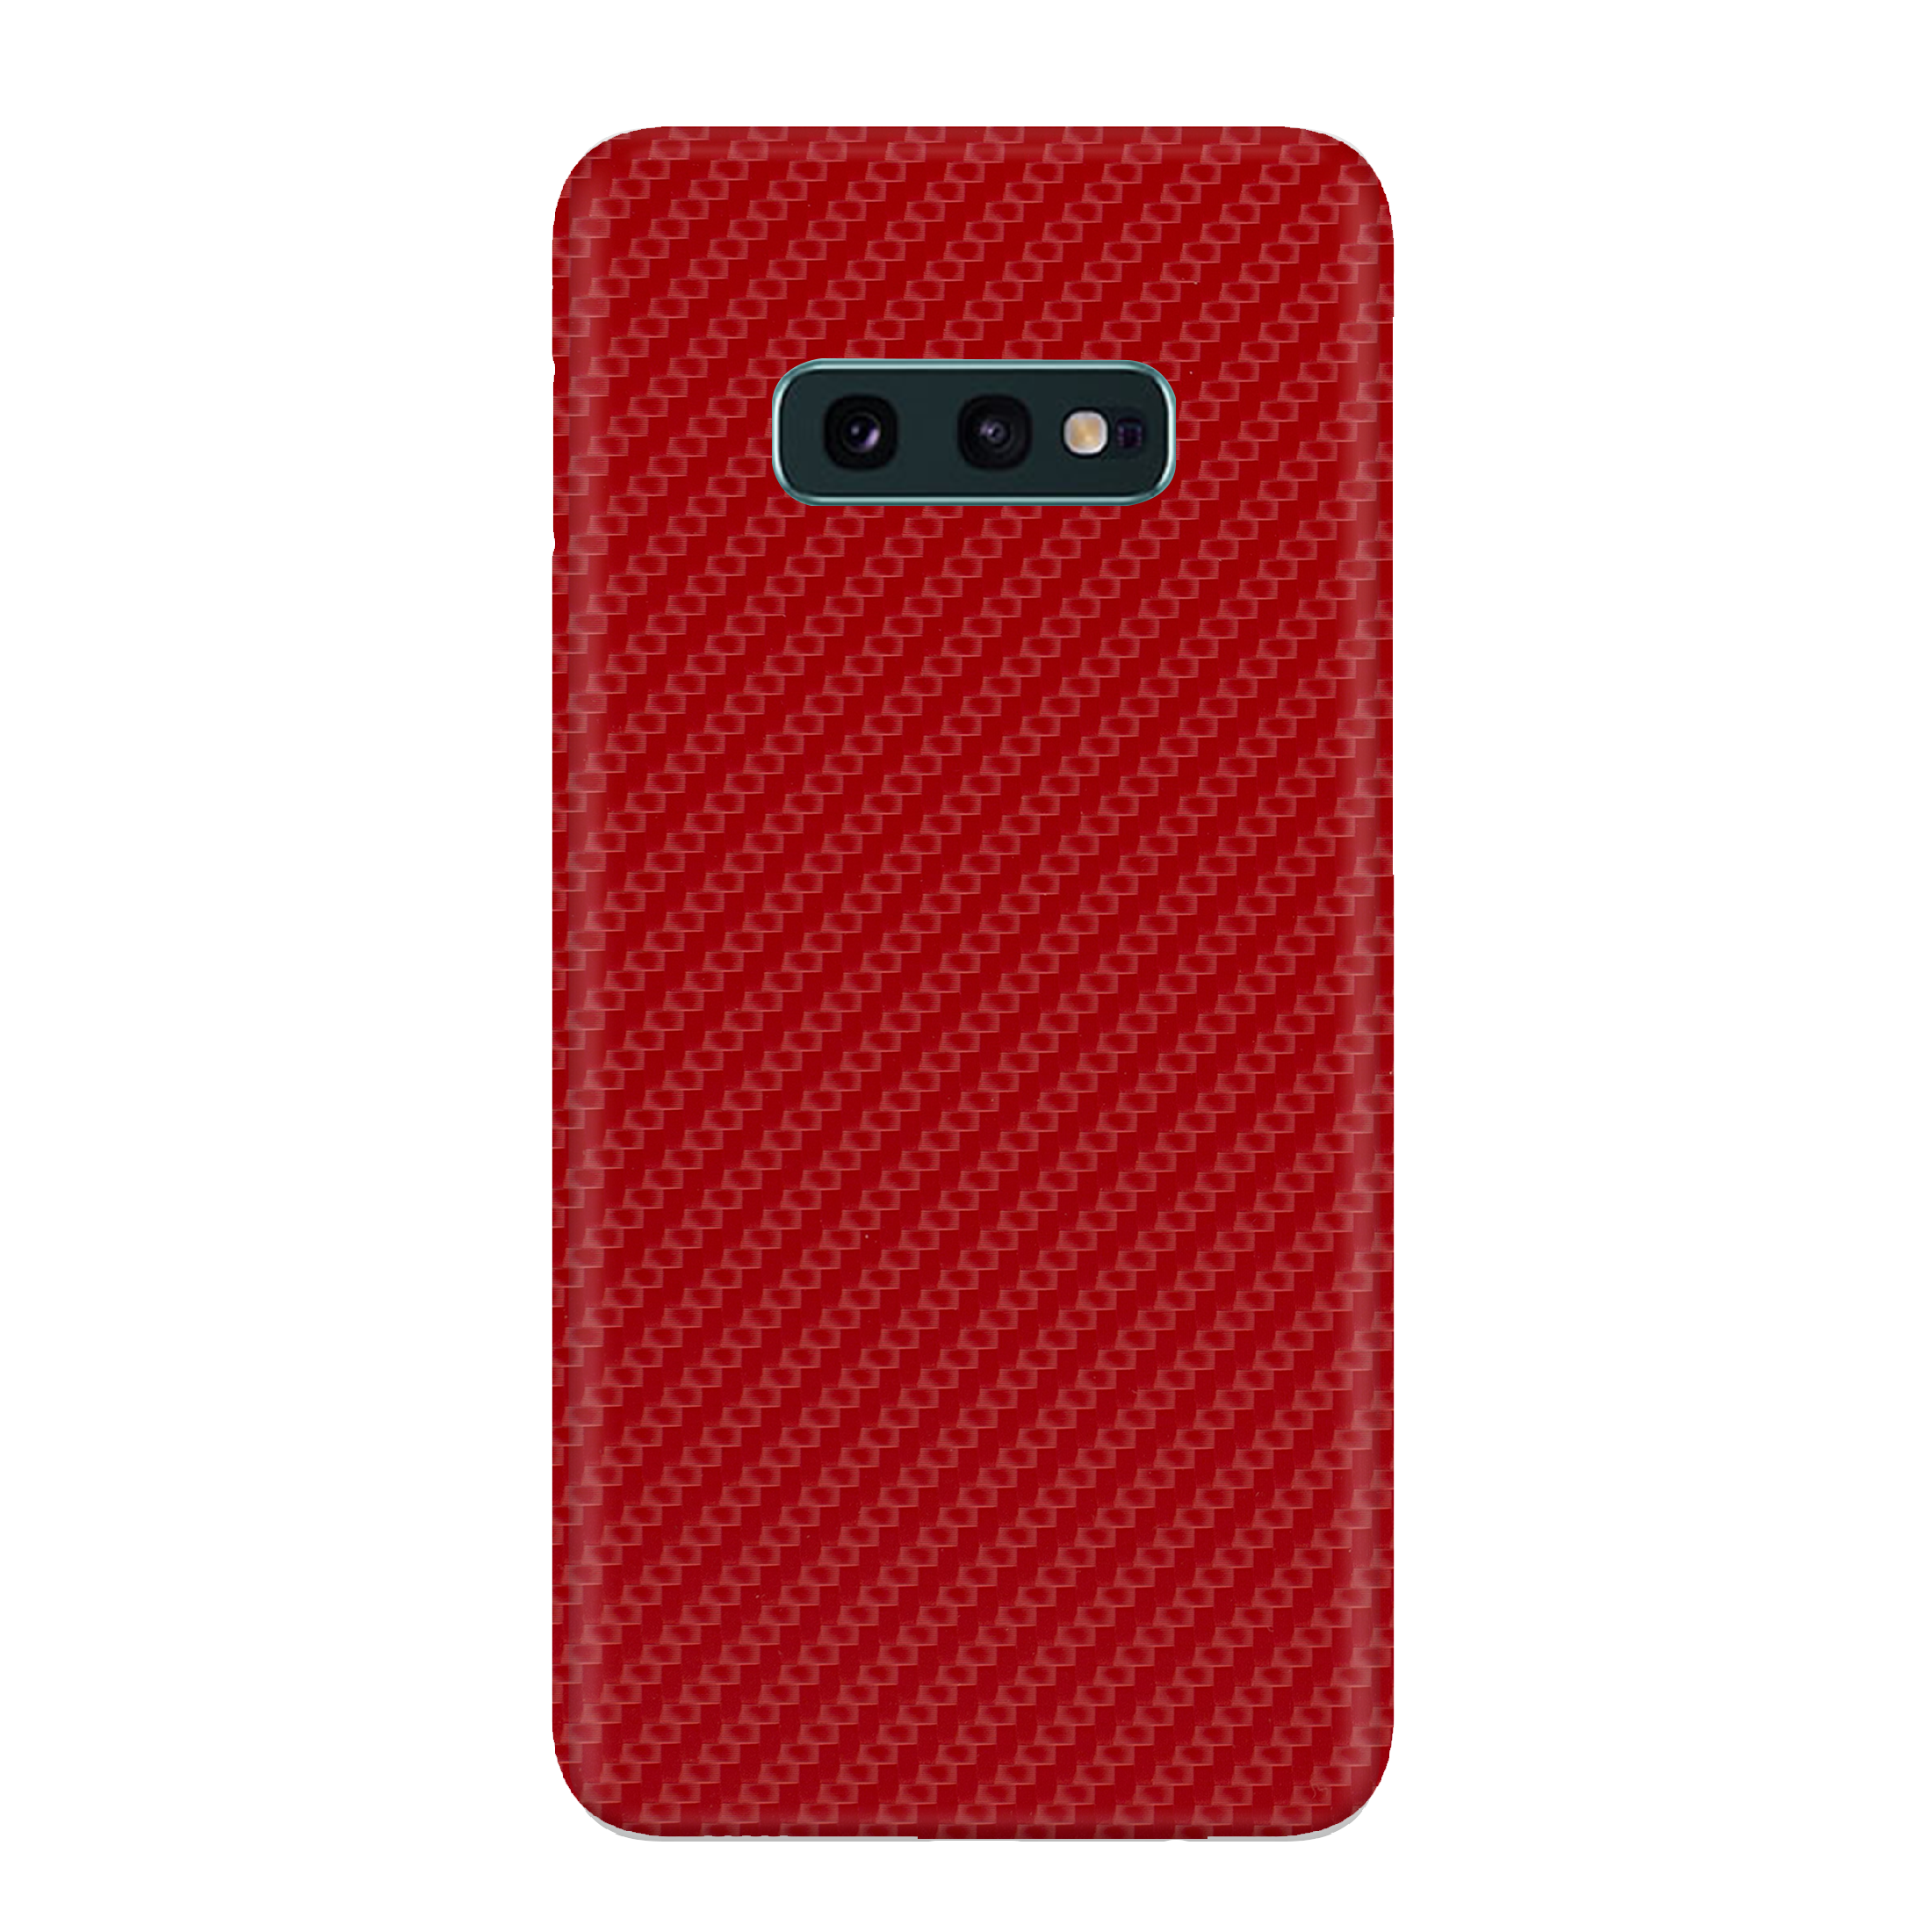 Carbon Fiber Red Skin for Samsung S10E